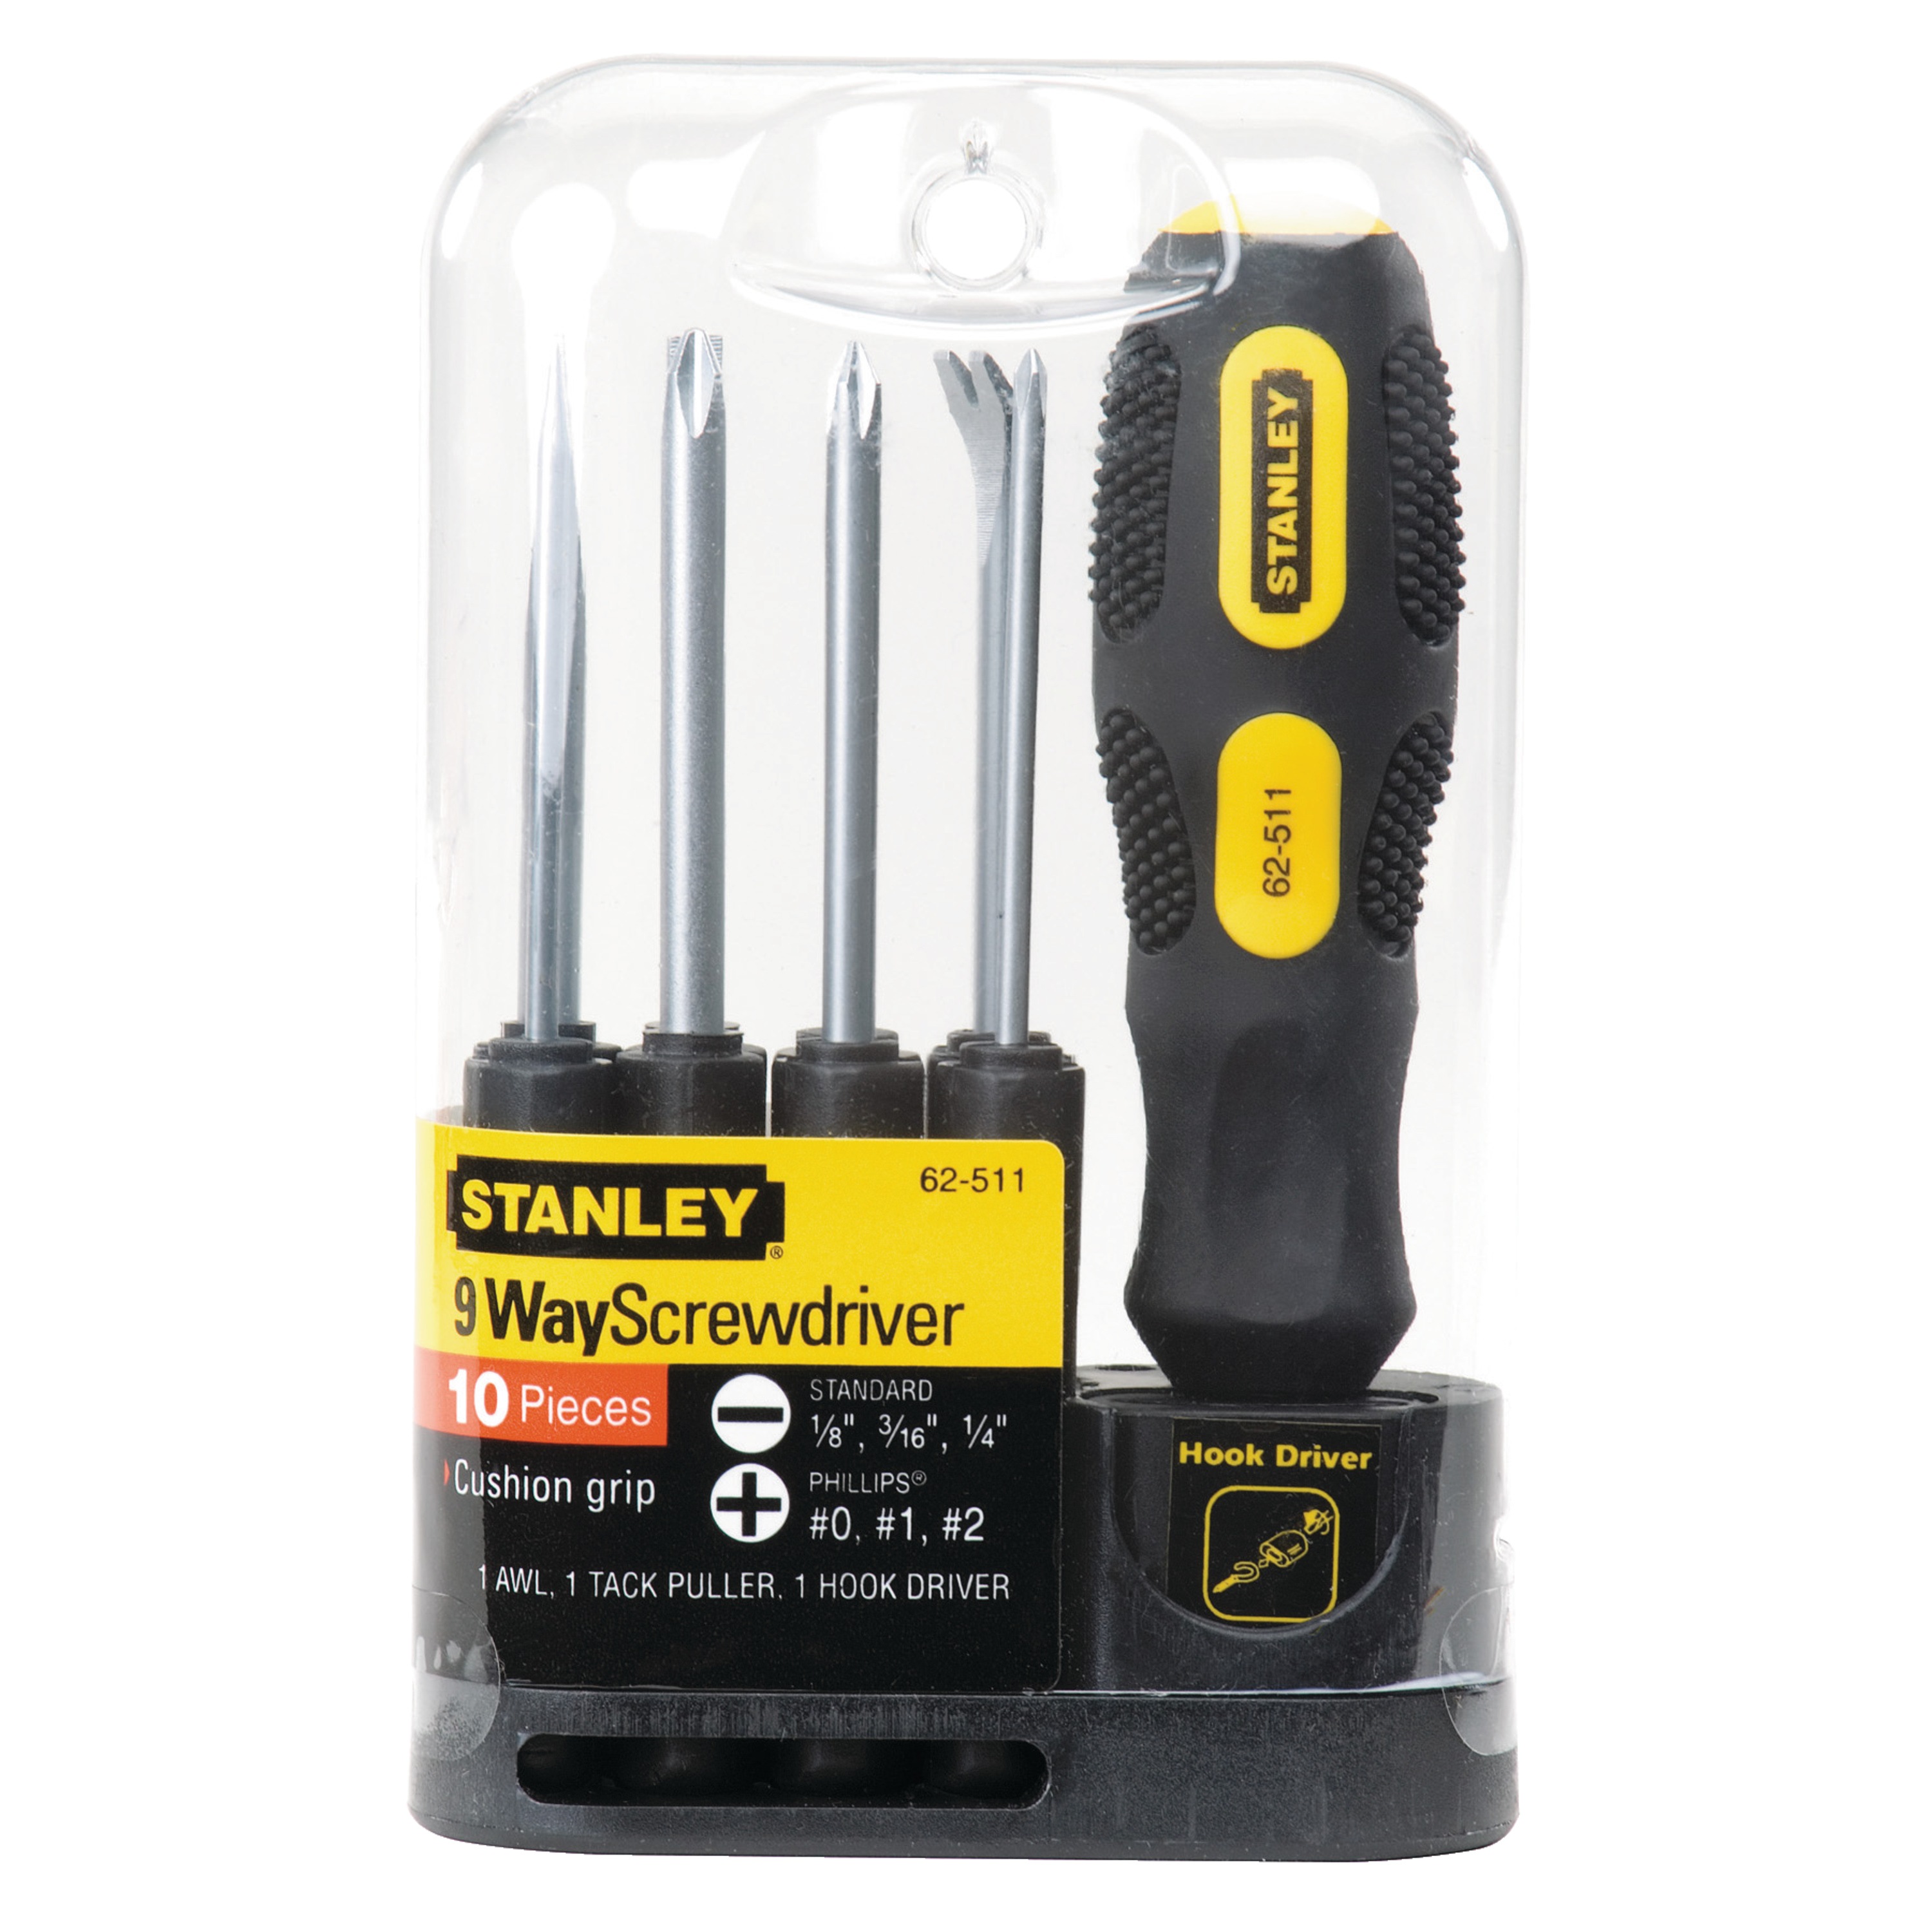 Stanley Tools - 9Way Screwdriver - 62-511